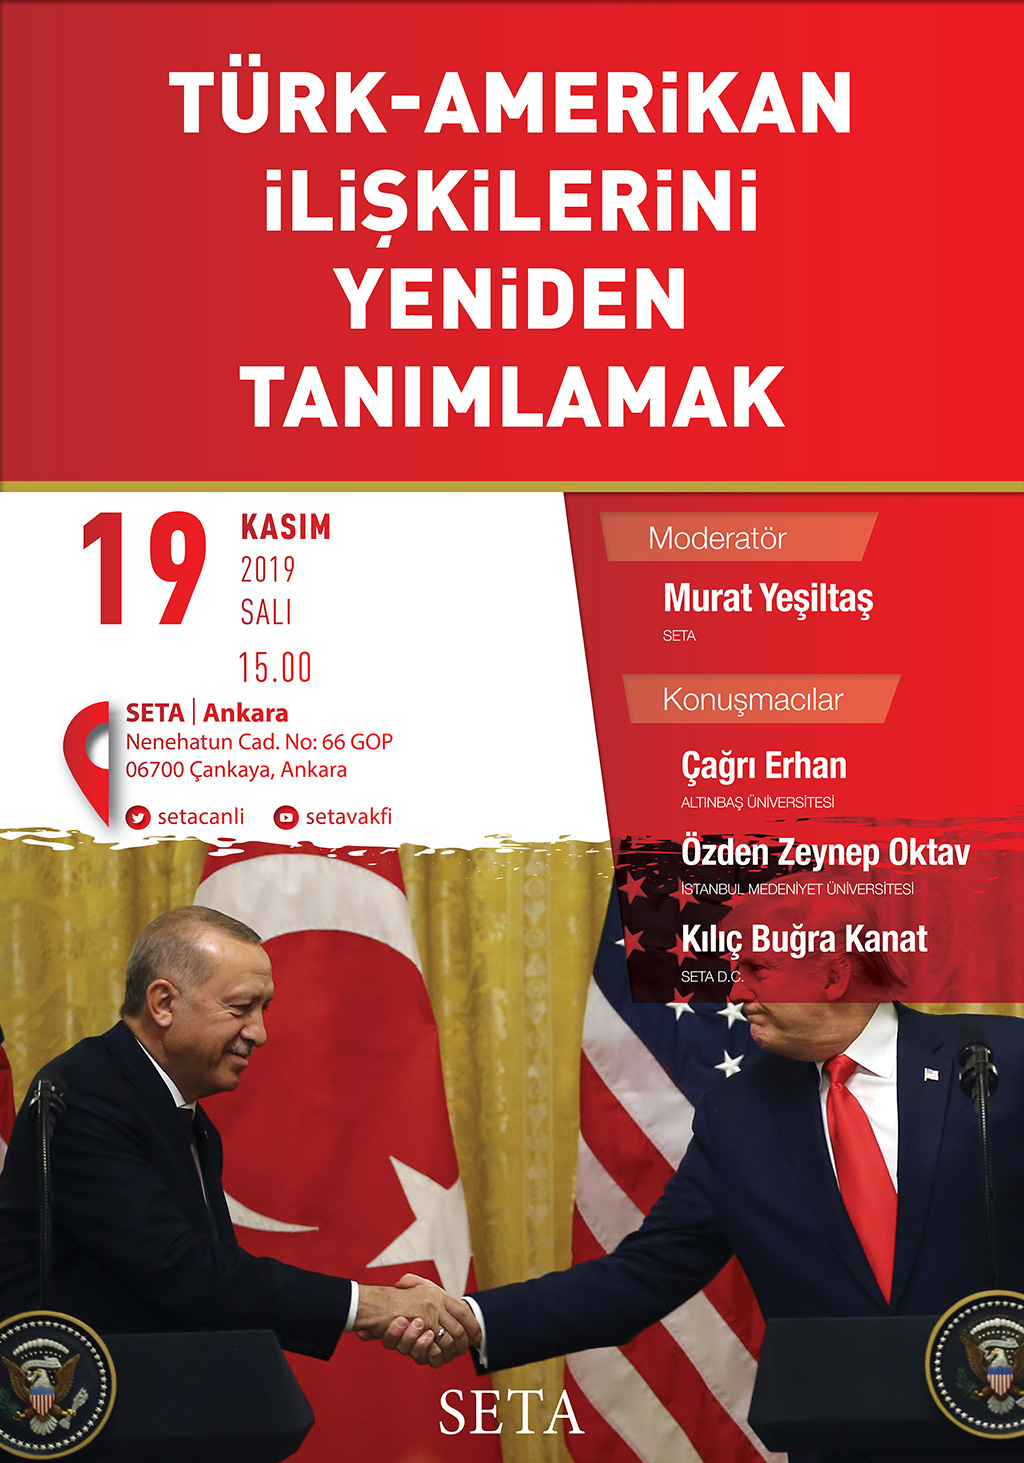 Panel: Türk-Amerikan İlişkilerini Yeniden Tanımlamak